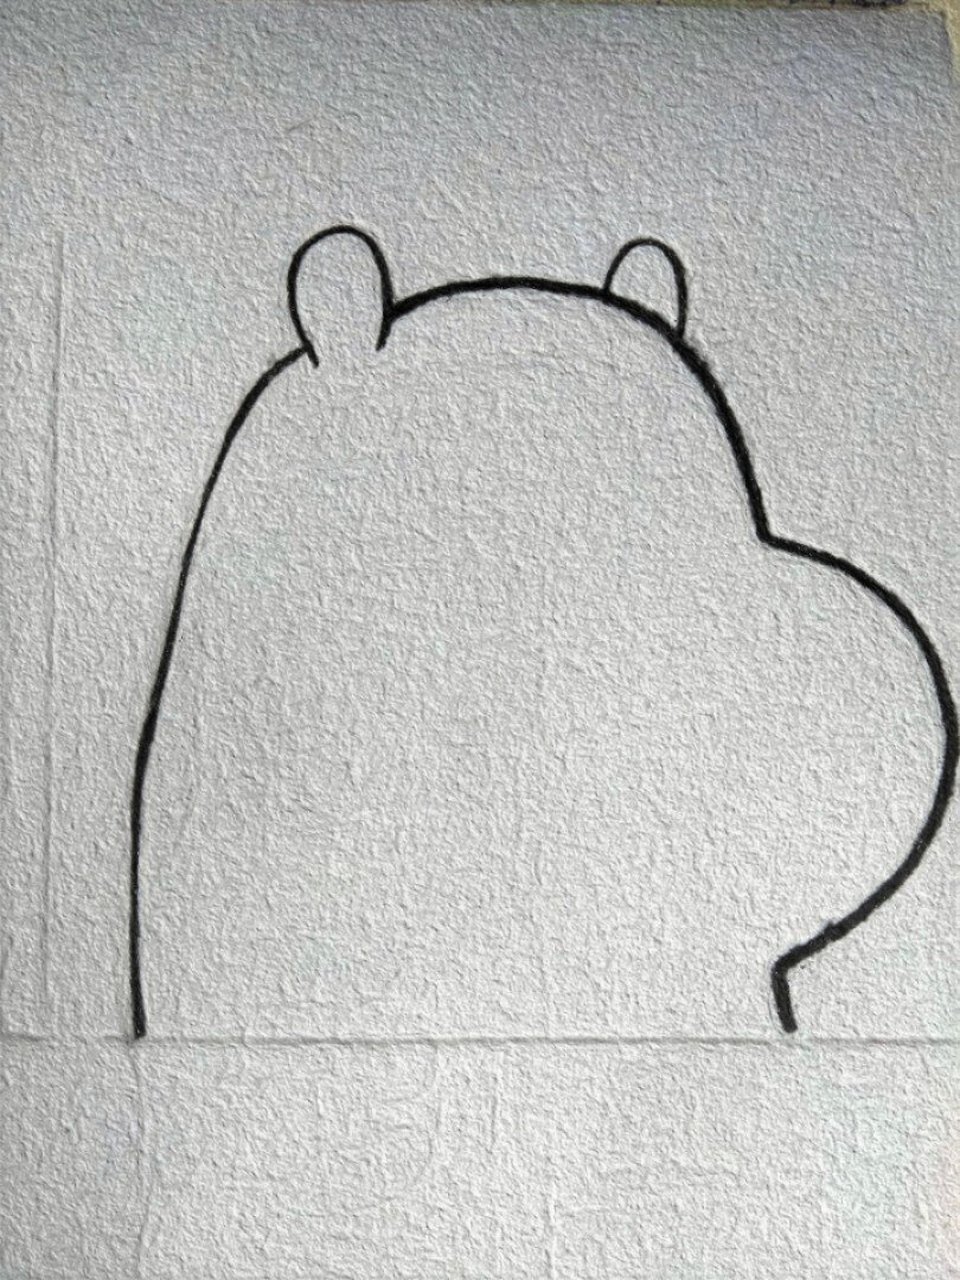 白熊简笔画画法图片